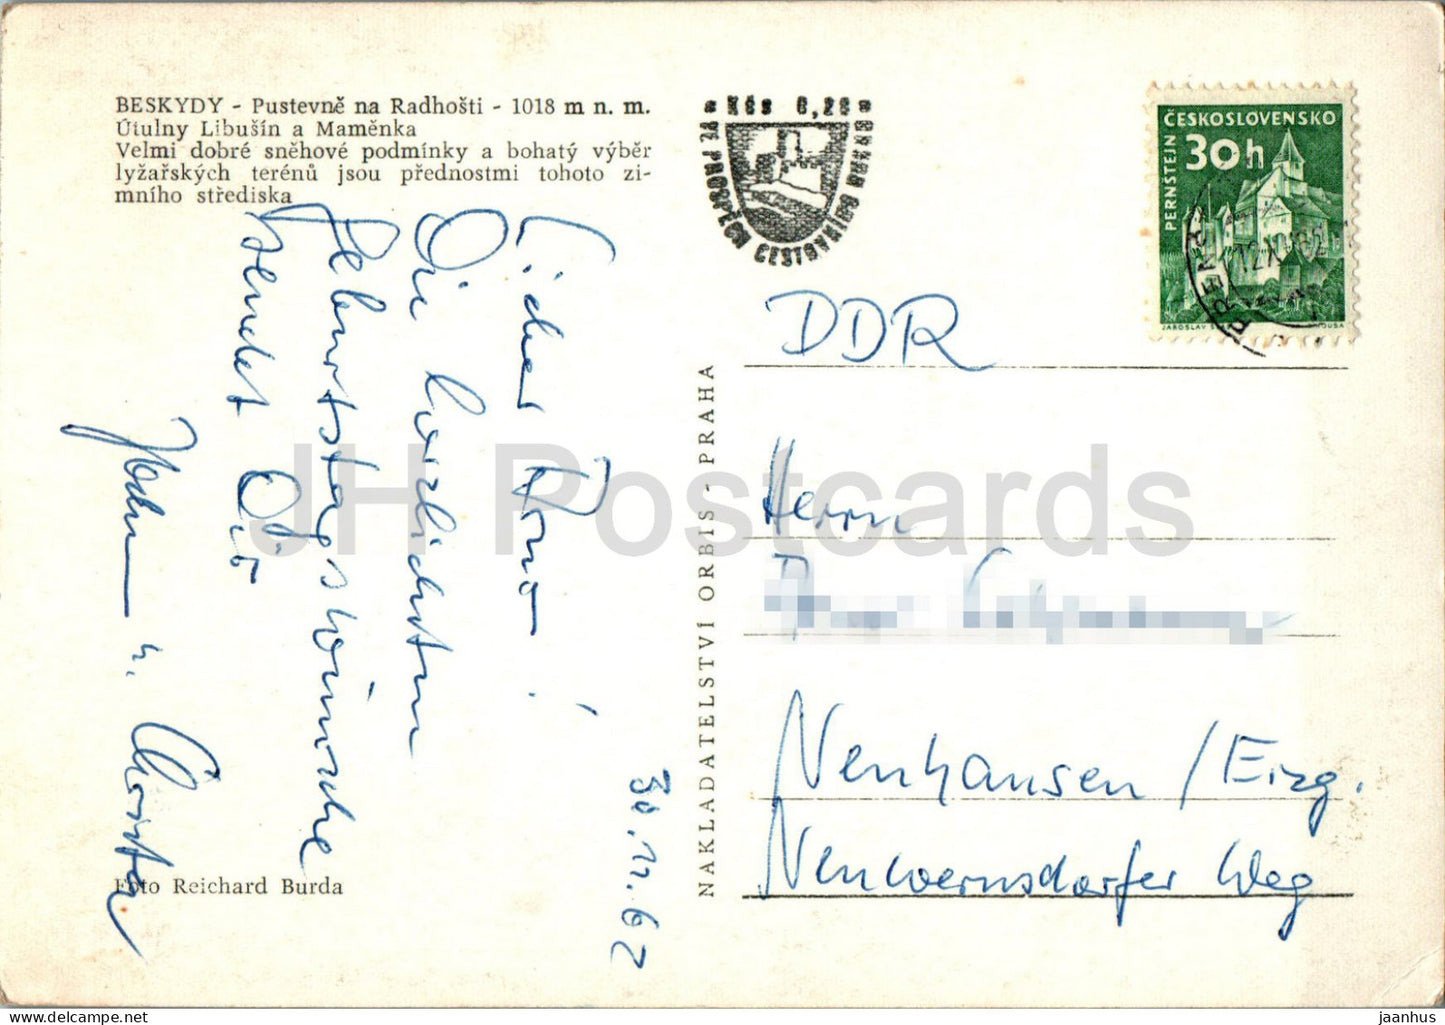 Beskydy - Pustevne na Radhosti - Hermitageon Radhosti - 1962 - Czech Repubic - Czechoslovakia - used